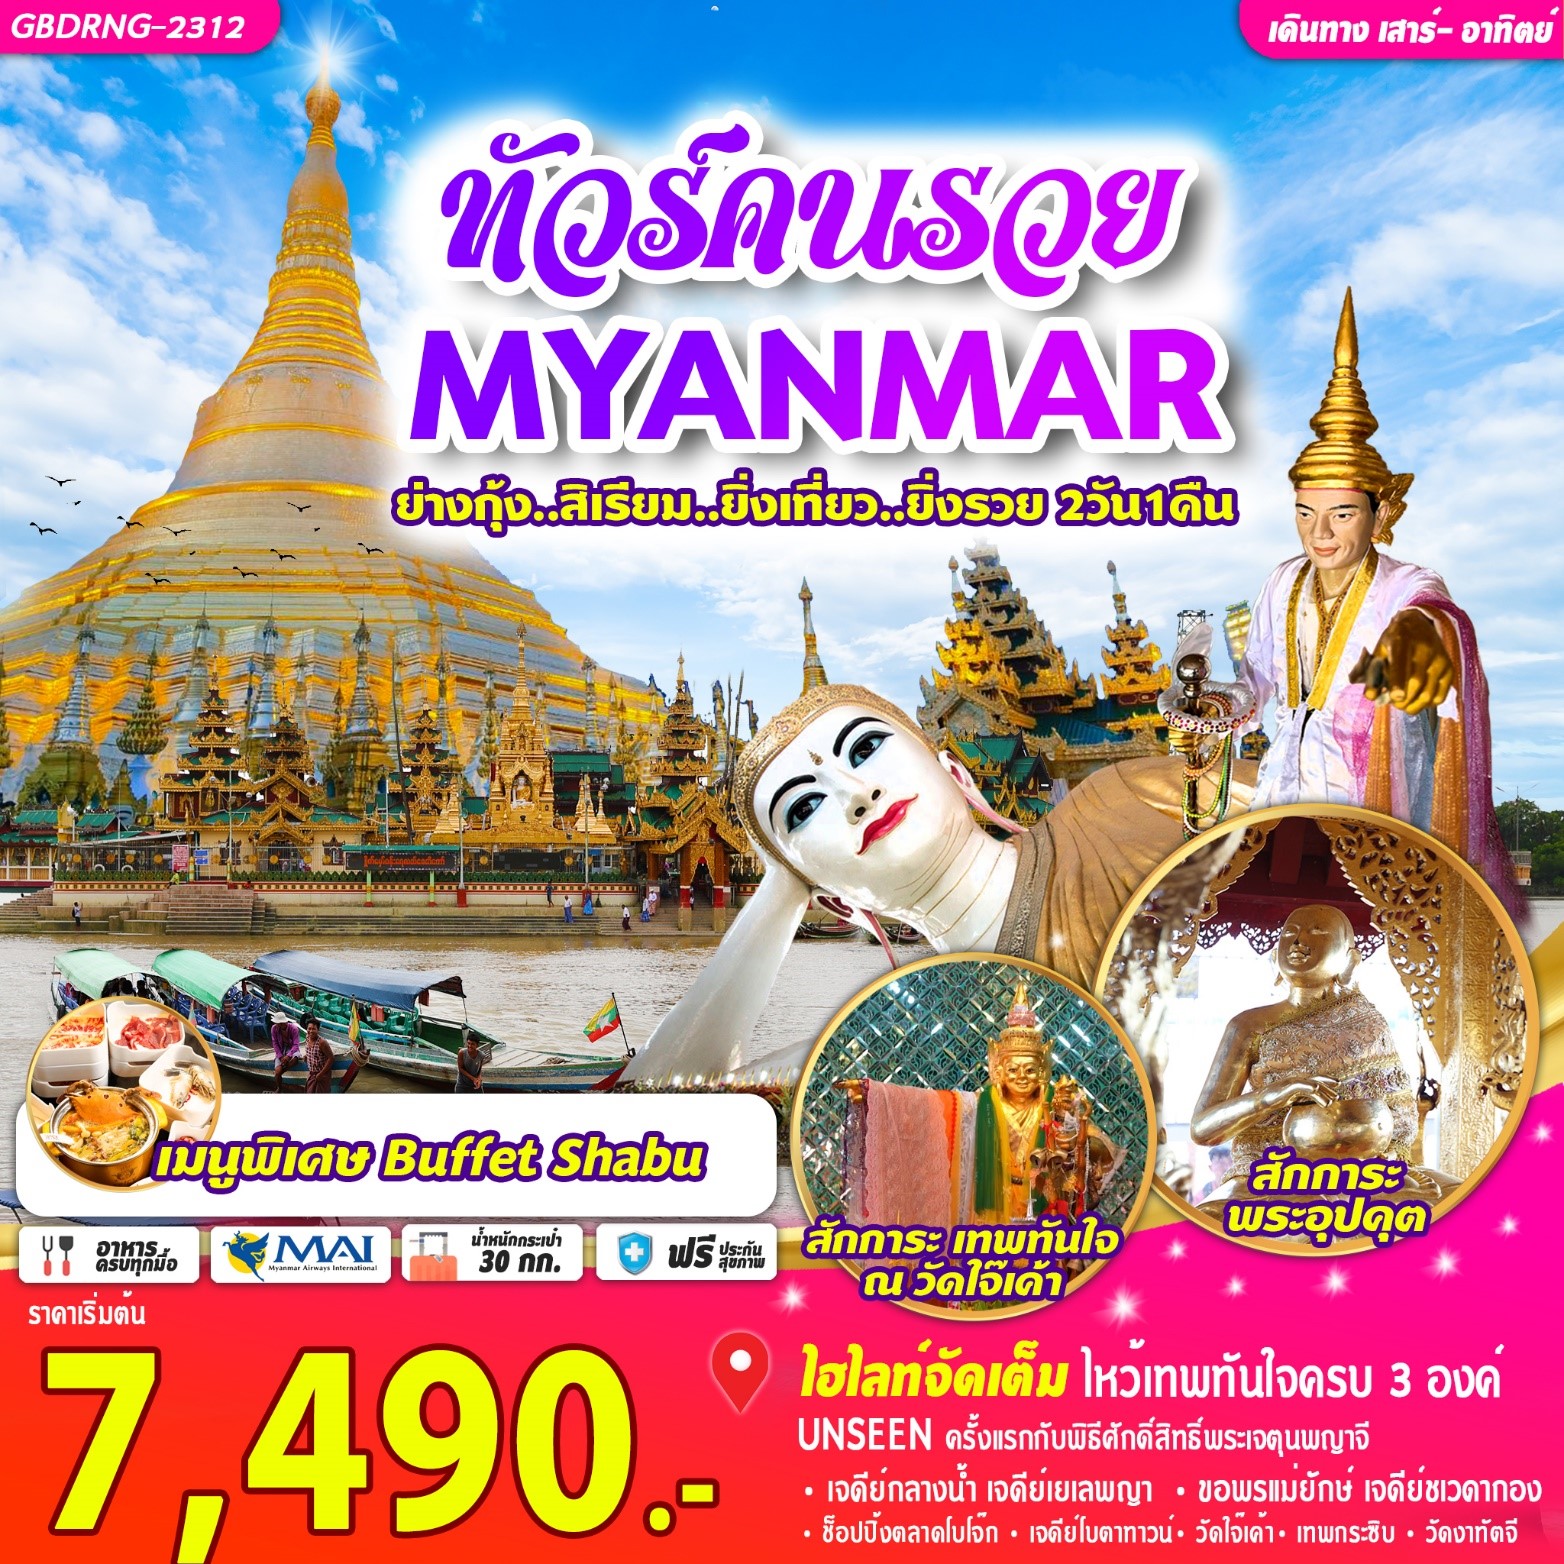 ทัวร์คนรวย MYANMAR ย่างกุ้ง สิเรียม ยิ่งเที่ยว ยิ่งรวย 2D1N by 8M